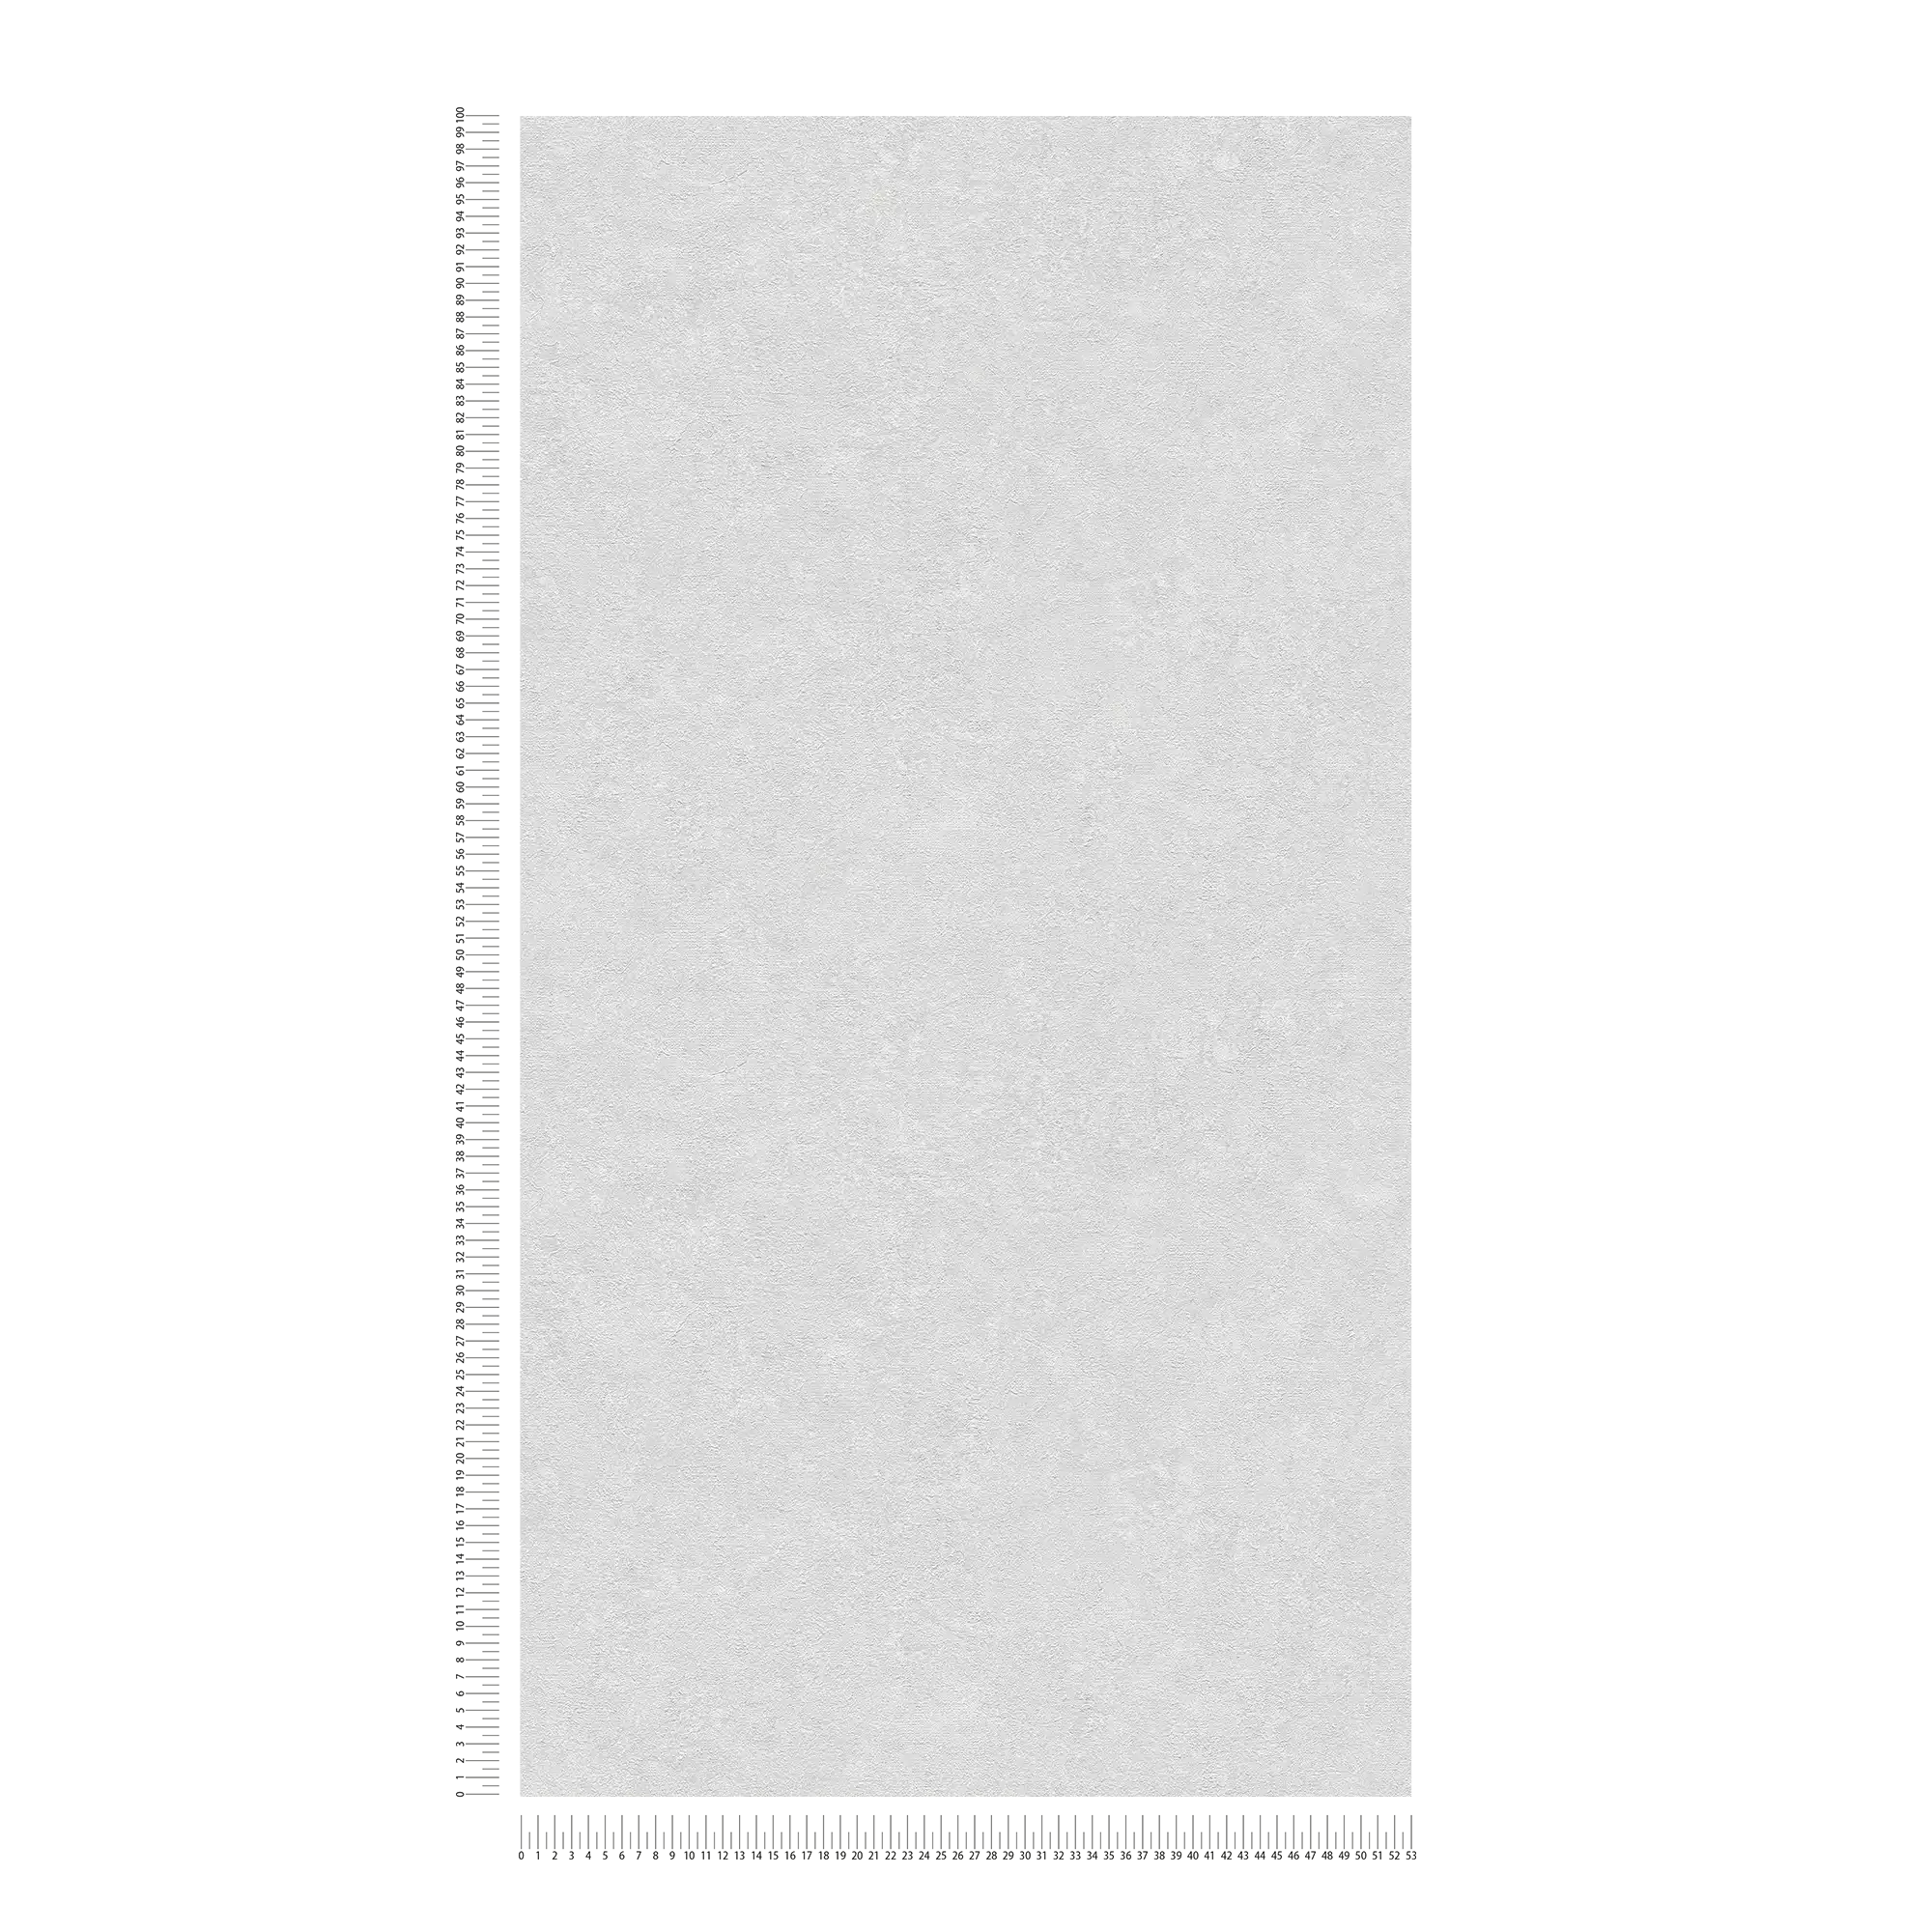             papel pintado liso con aspecto de yeso - gris, blanco
        